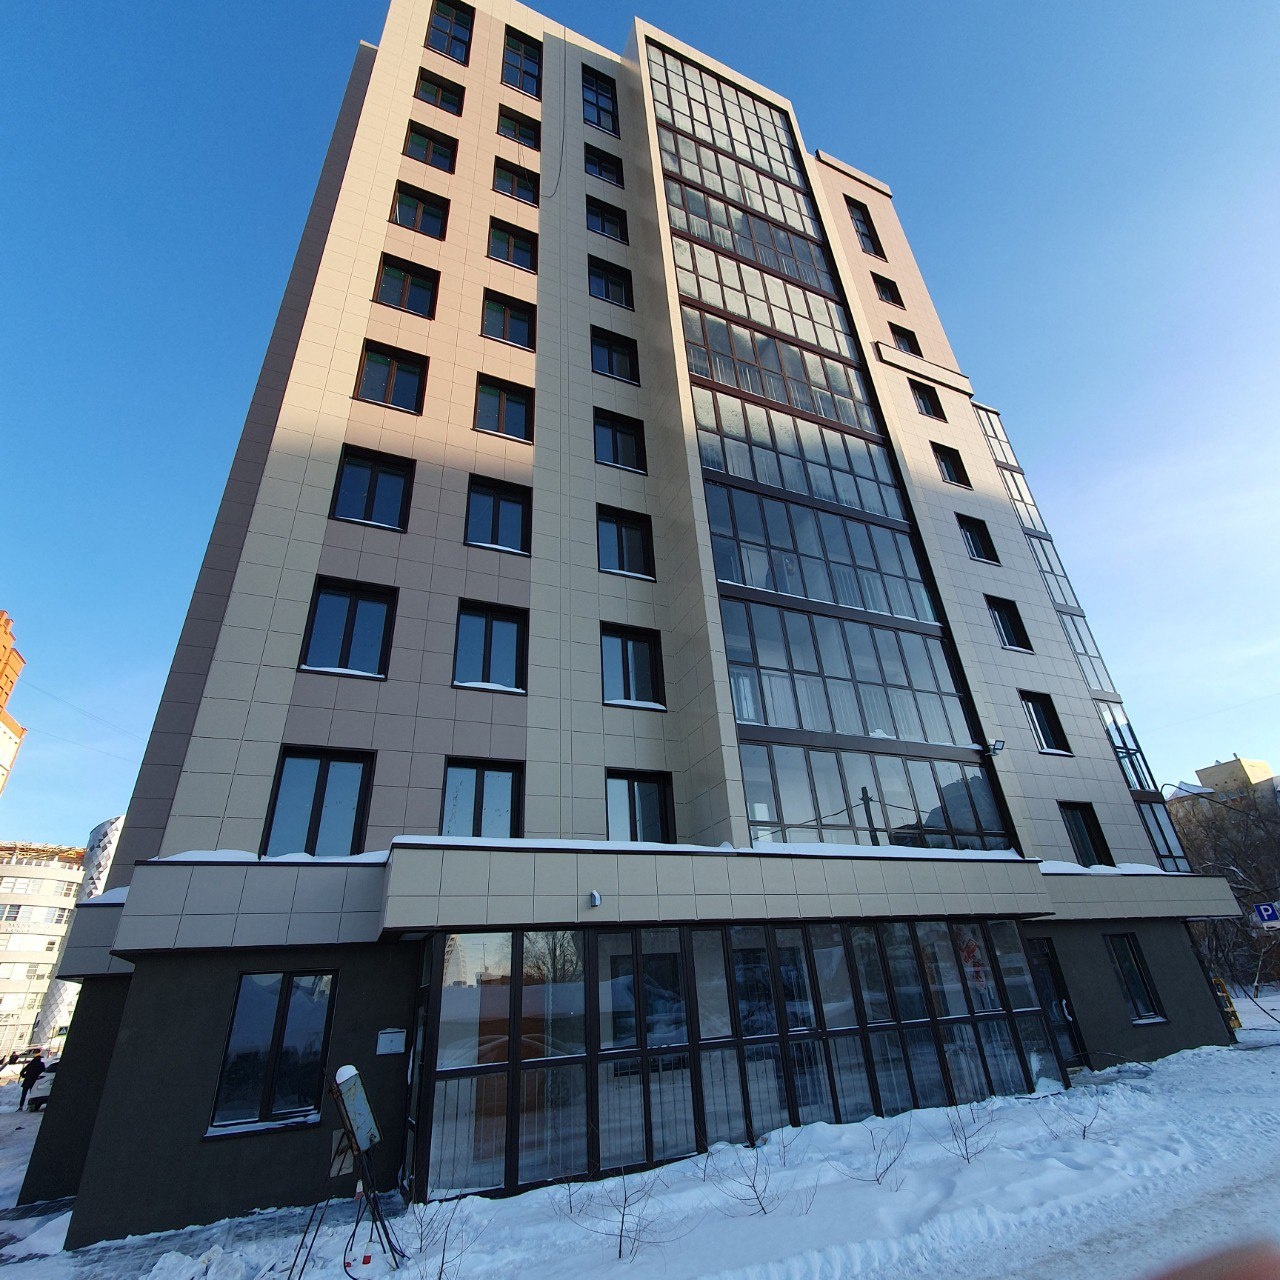 В центре Омска построили 10-этажный дом, где есть 5-комнатные квартиры #Омск #Общество #Сегодня